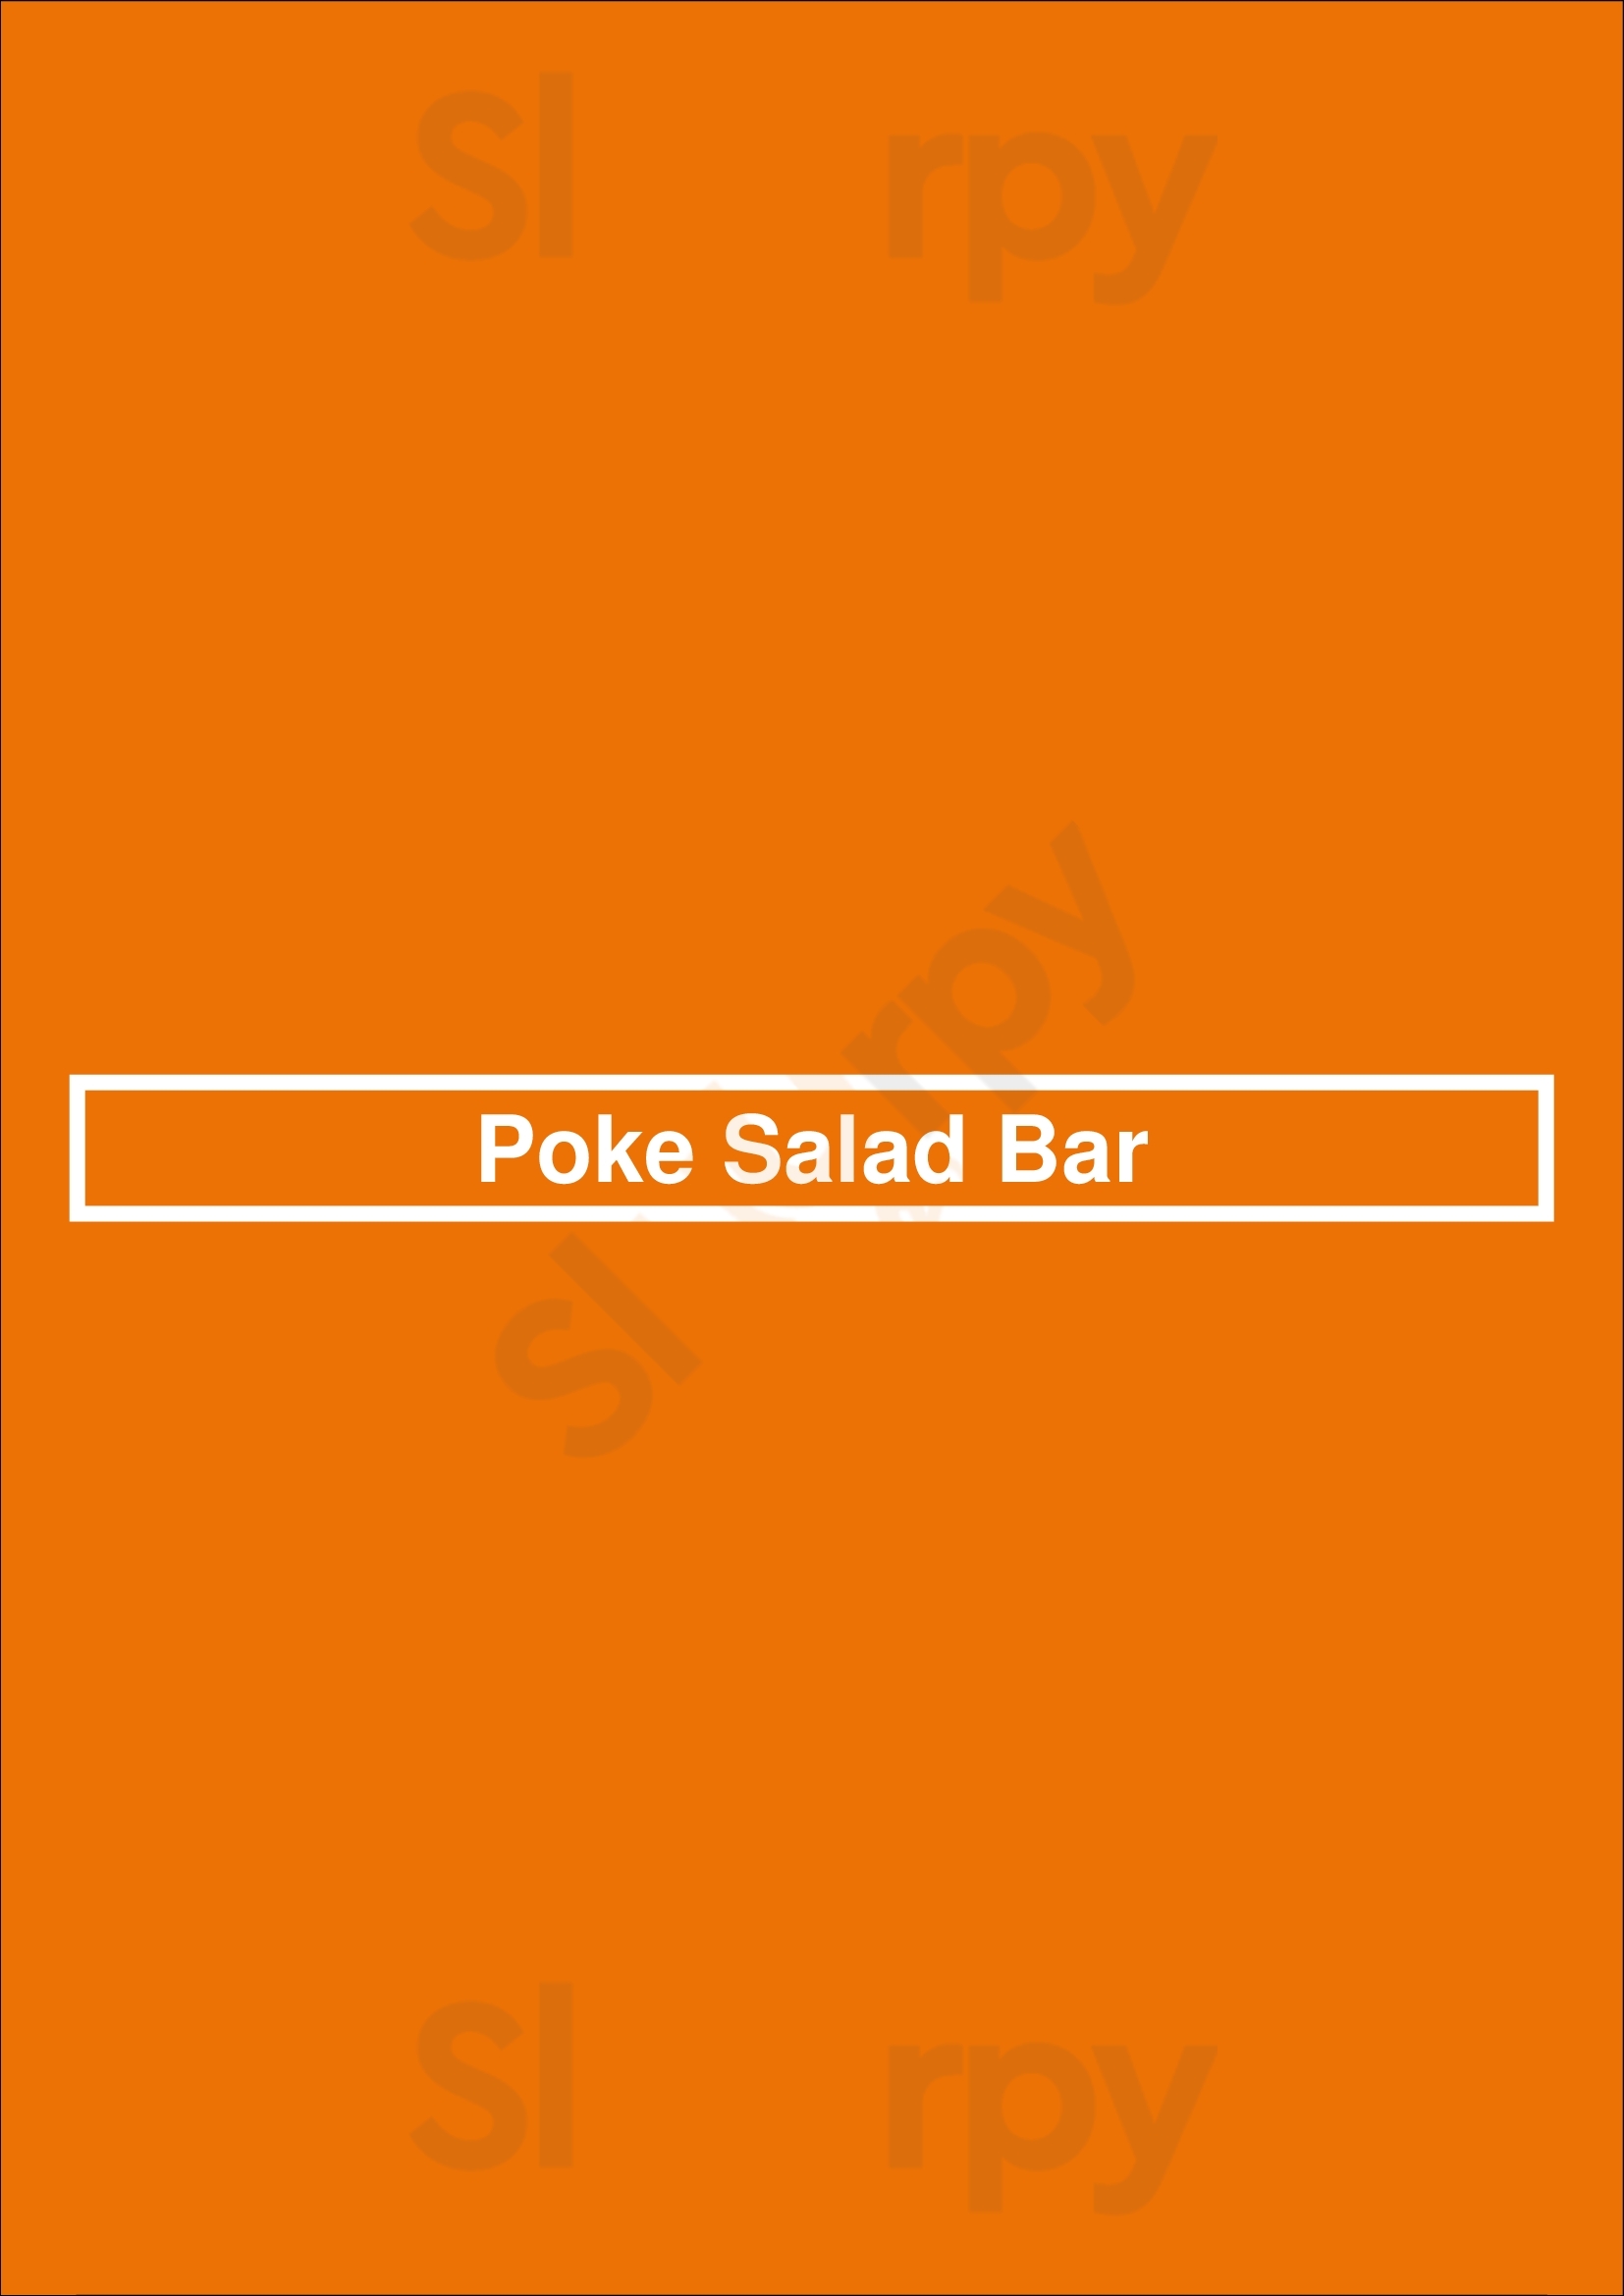 Poke Salad Bar Pasadena Menu - 1